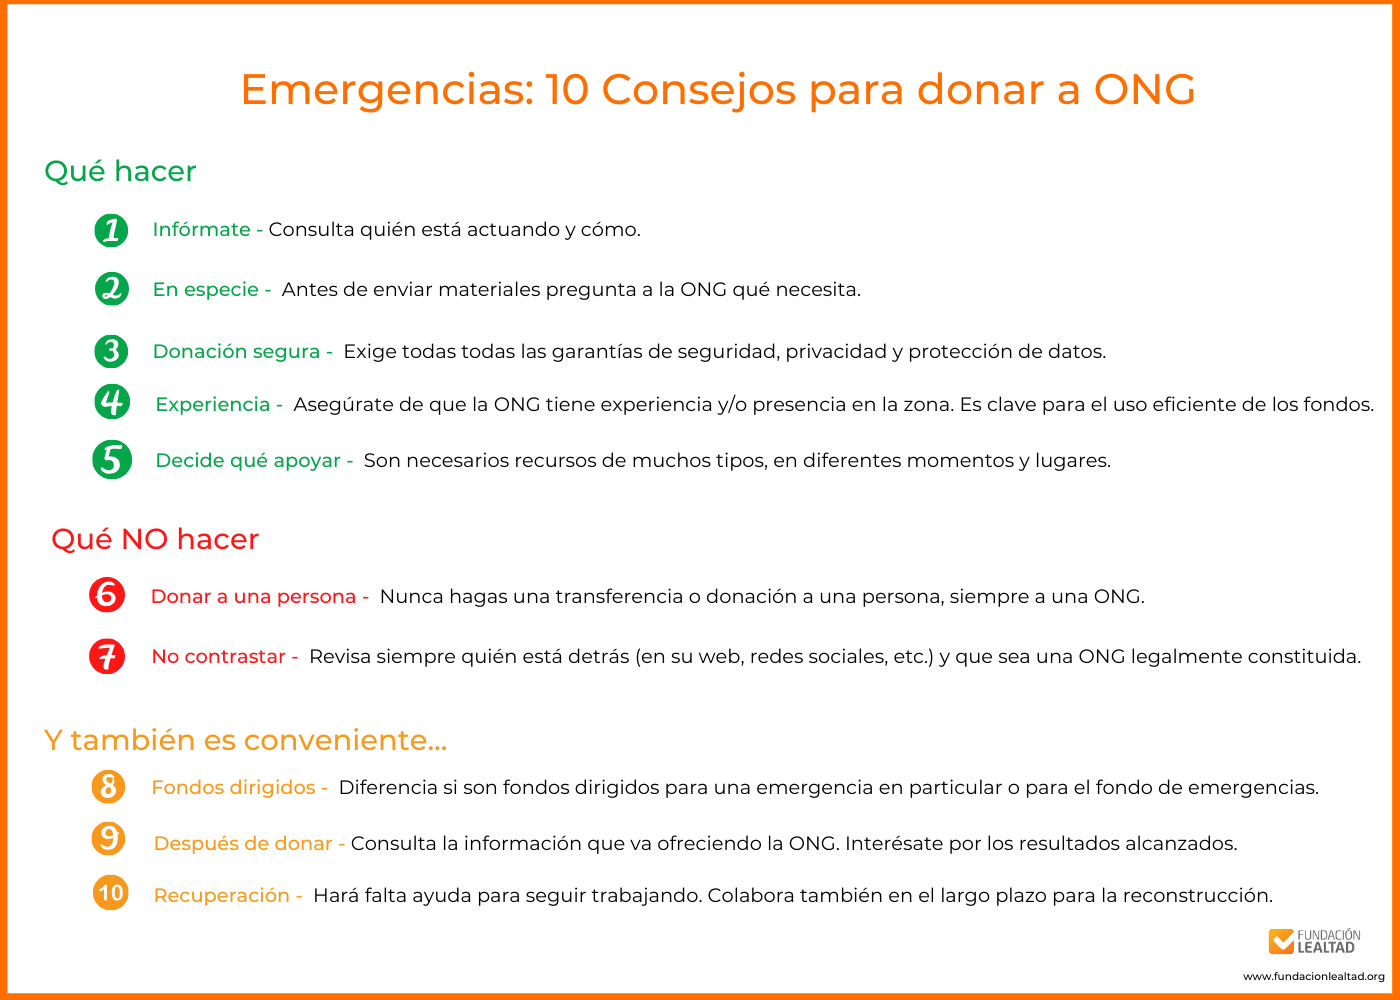 10 Consejos para donar en emergencias Fundación Lealtad